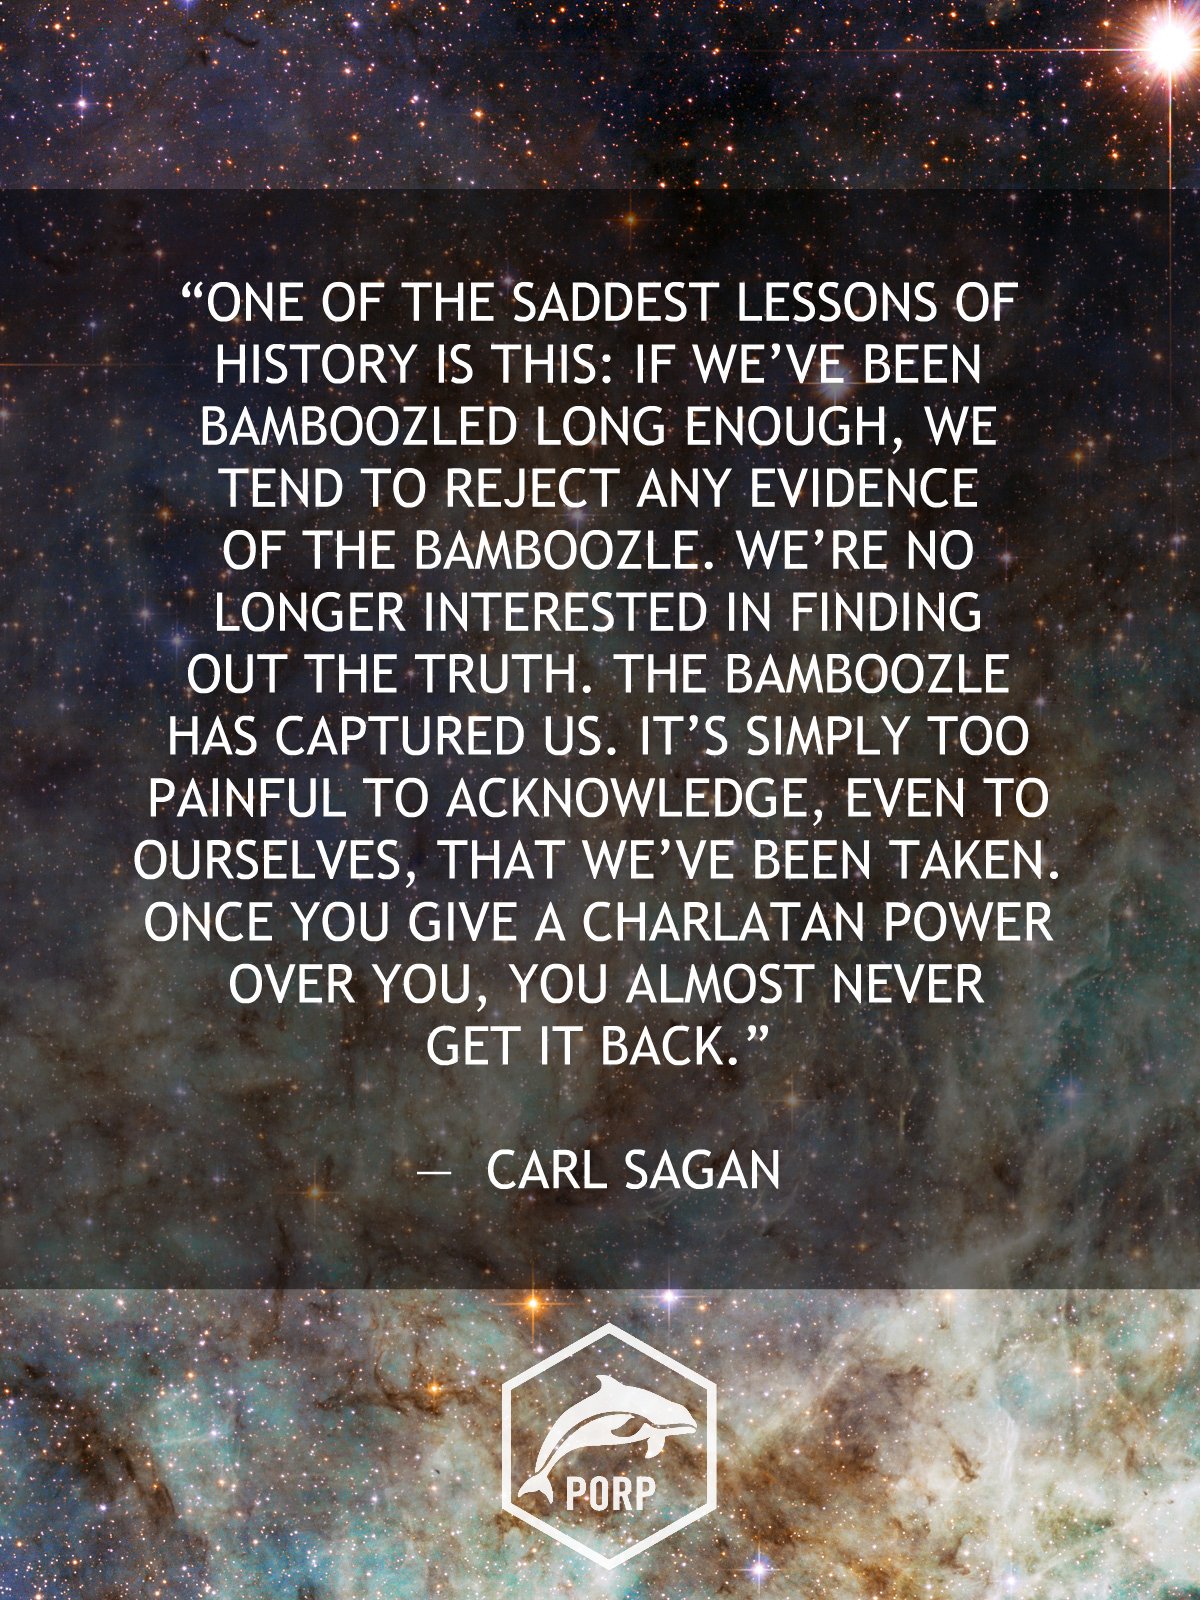 Happy Birthday Carl Sagan, we miss you! 